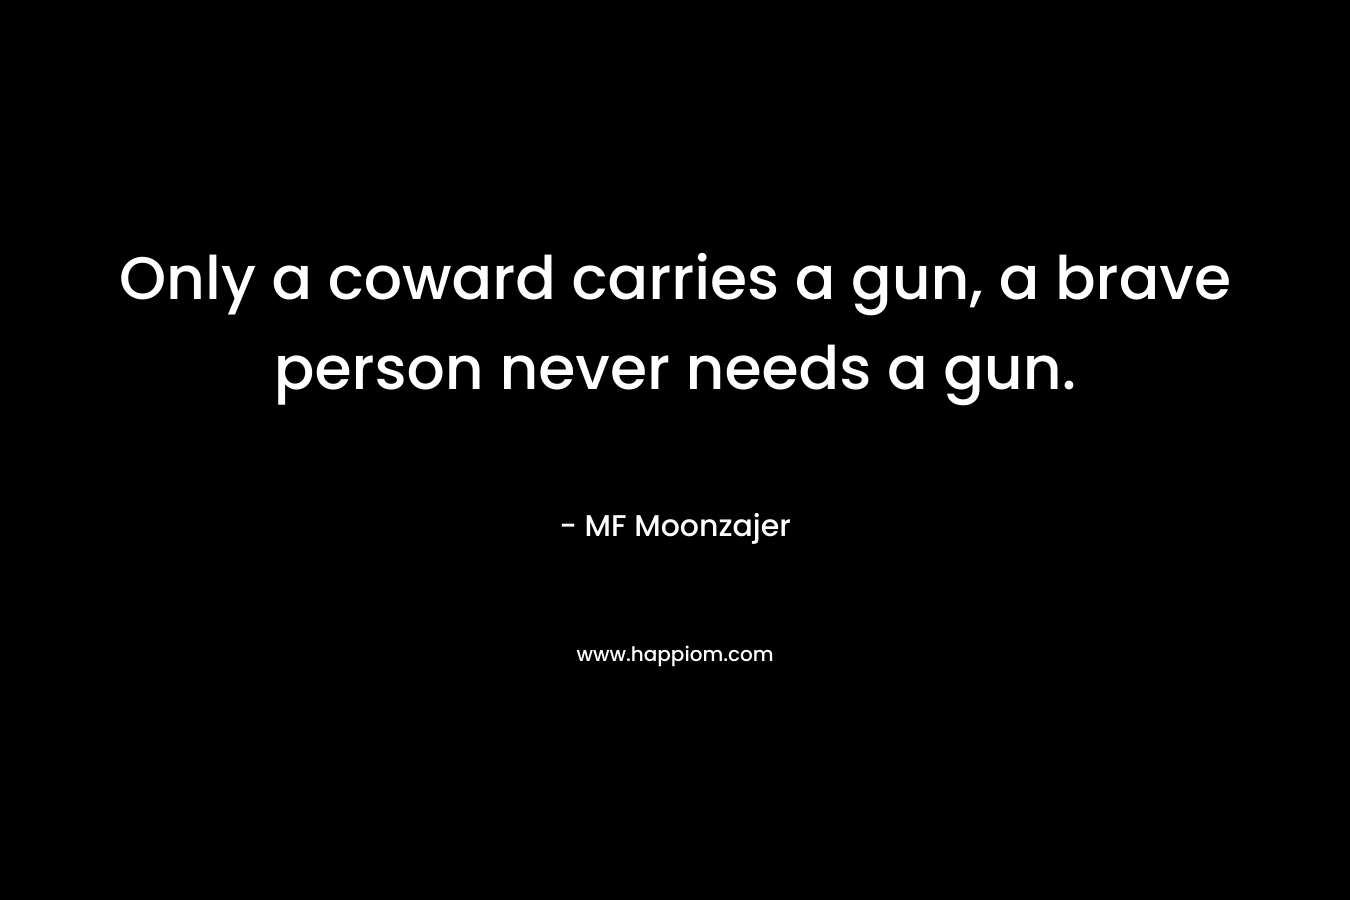 Only a coward carries a gun, a brave person never needs a gun.